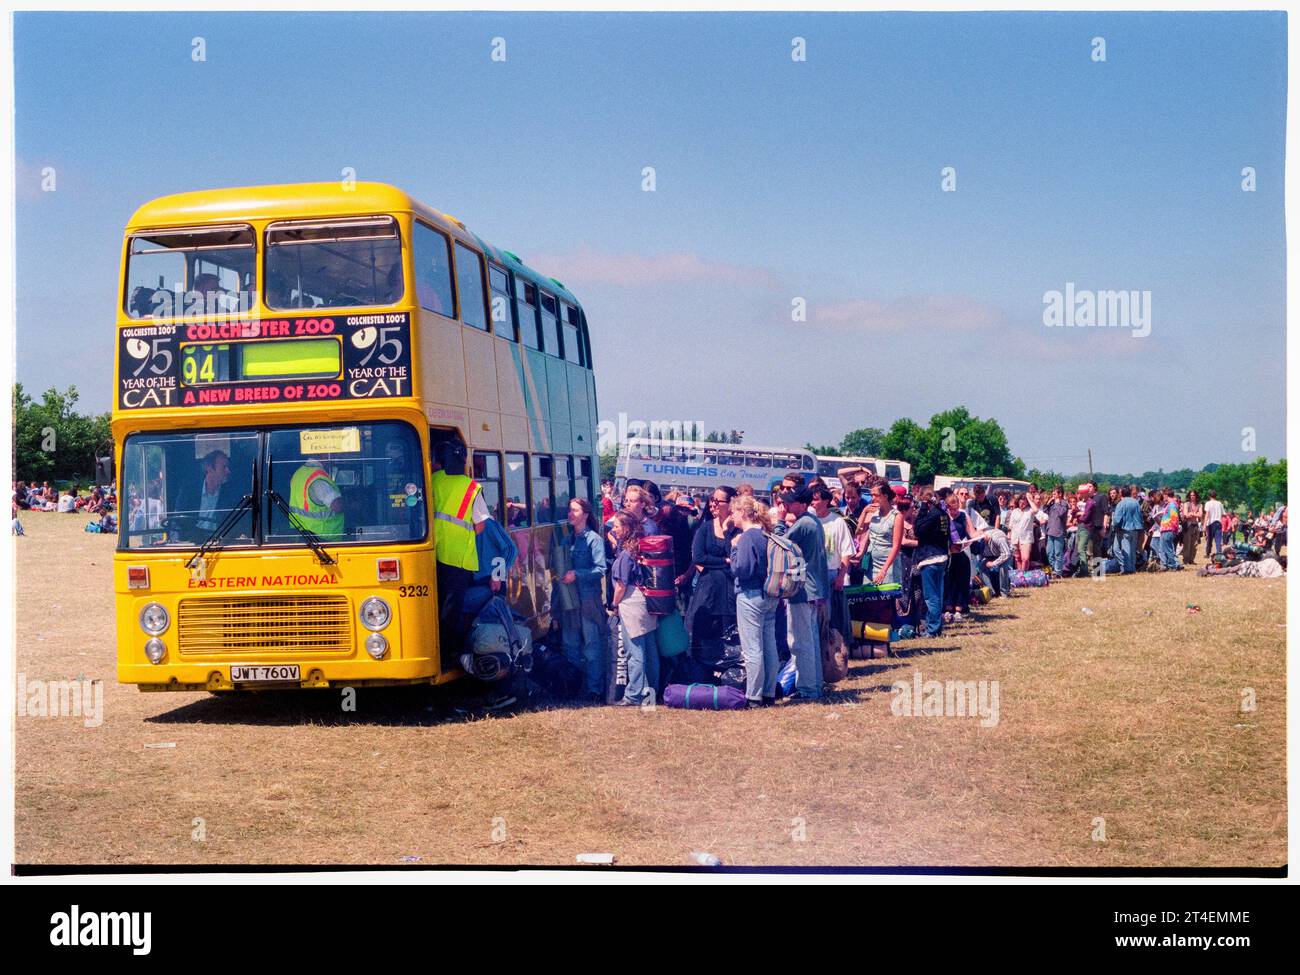 FESTIVAL DE GLASTONBURY, 1995 : les gens font la queue pour leur trajet dans la zone de la gare routière dans le parking le lundi matin après la fin du Festival de Glastonbury, Pilton Farm, Somerset, Angleterre, 26 juin 1995. En 1995, le festival a célébré son 25e anniversaire. Il n'y avait pas de stade pyramidal cette année-là car il avait brûlé. Photo : ROB WATKINS Banque D'Images